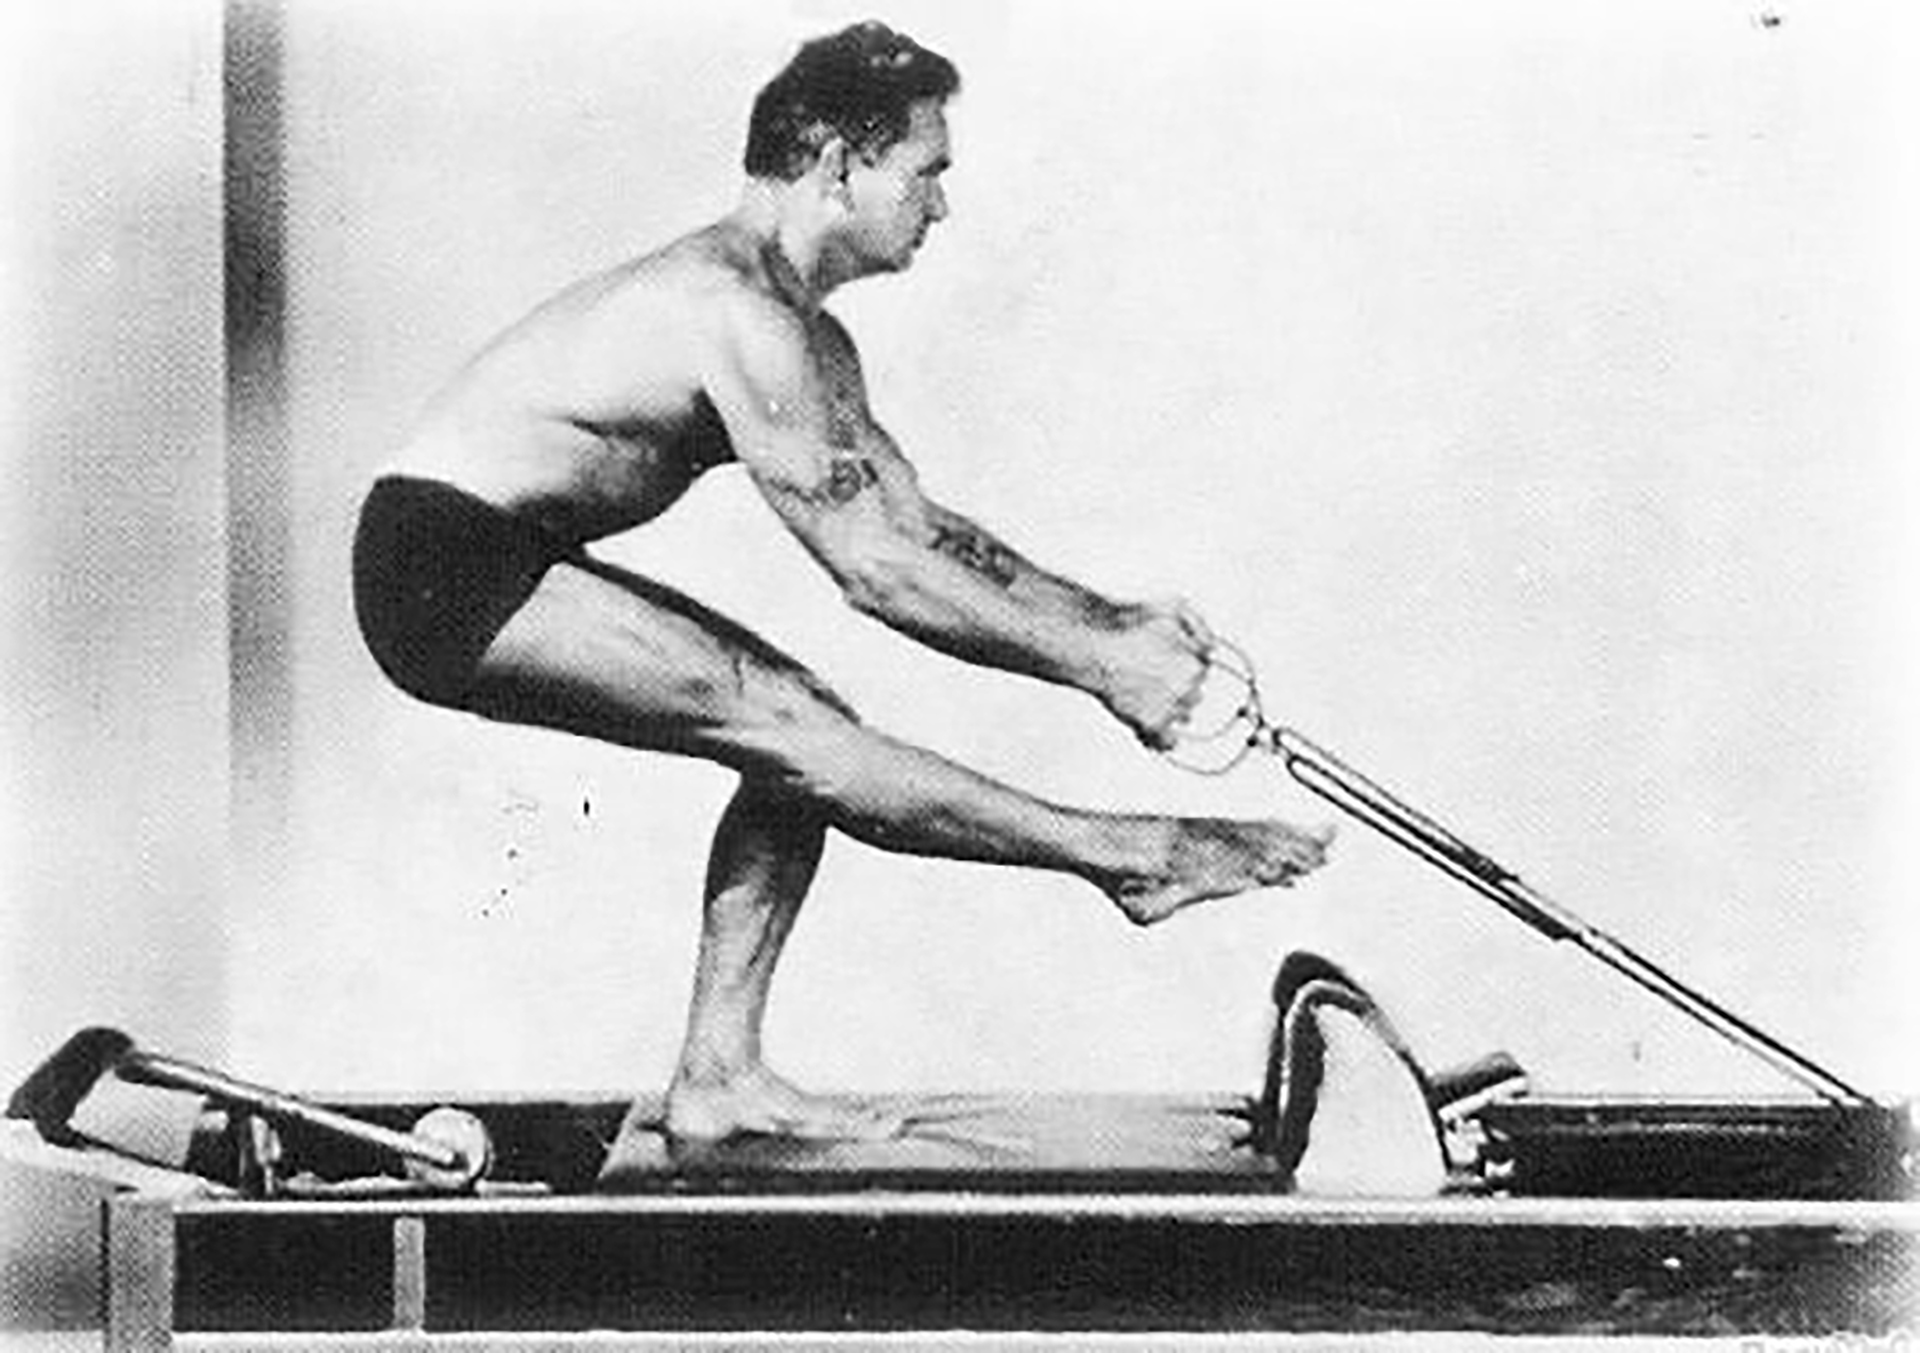 En 1926 Pilates viajó desde Alemania a los Estados Unidos, donde patentó su método de camas con resortes para hacer gimnasia, al que llamó "Contrología"